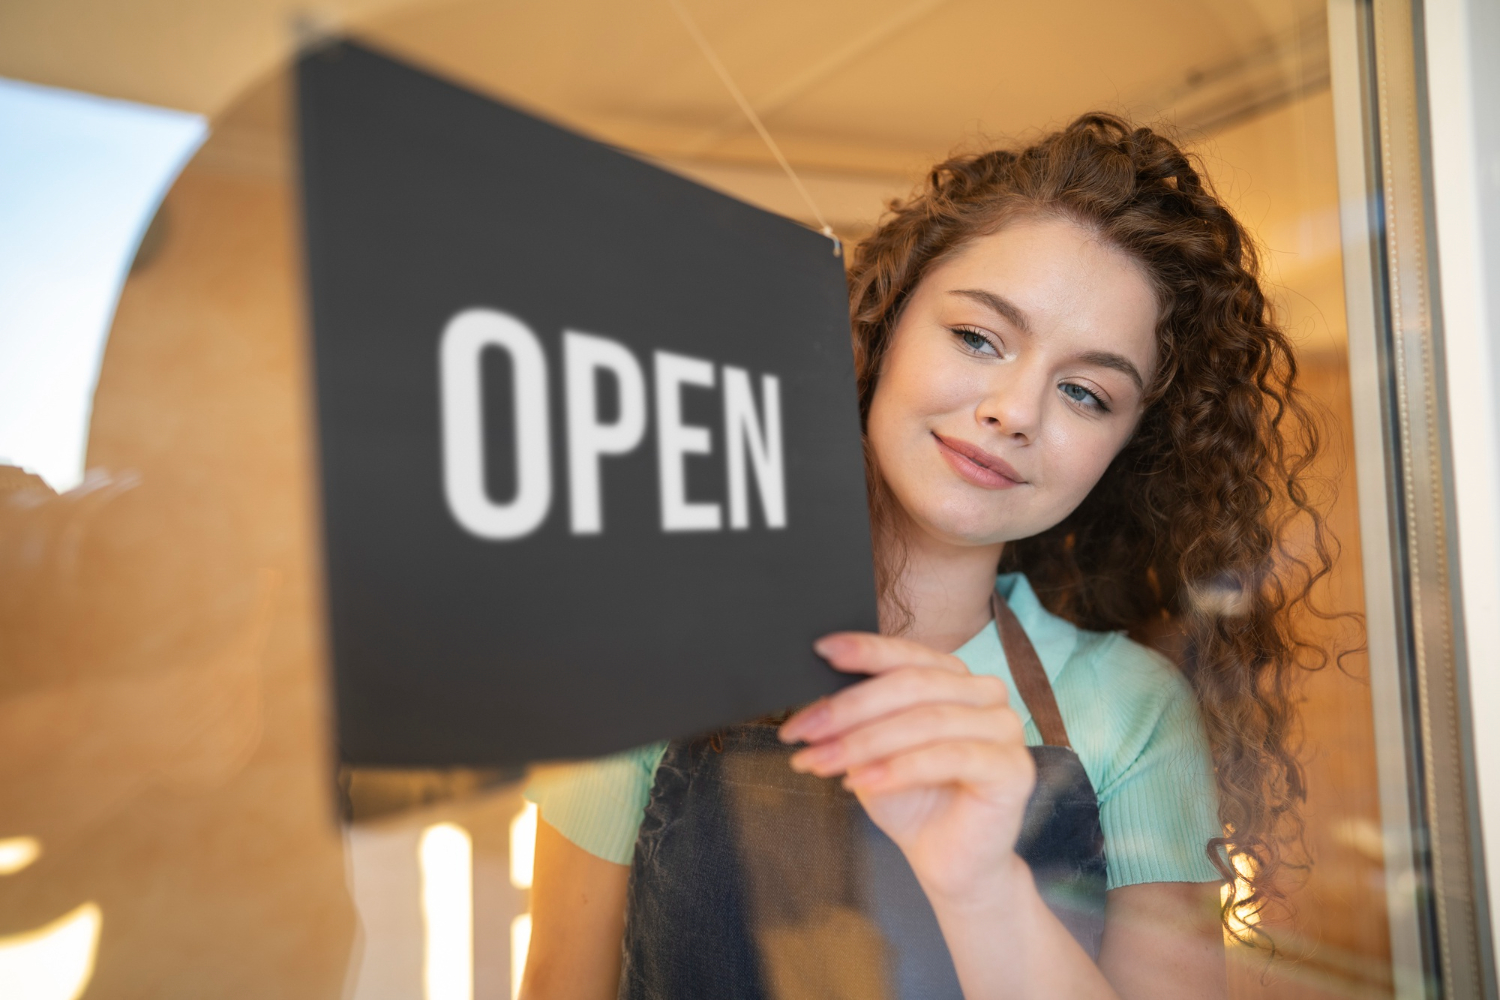 abertura de micro e pequenas empresas